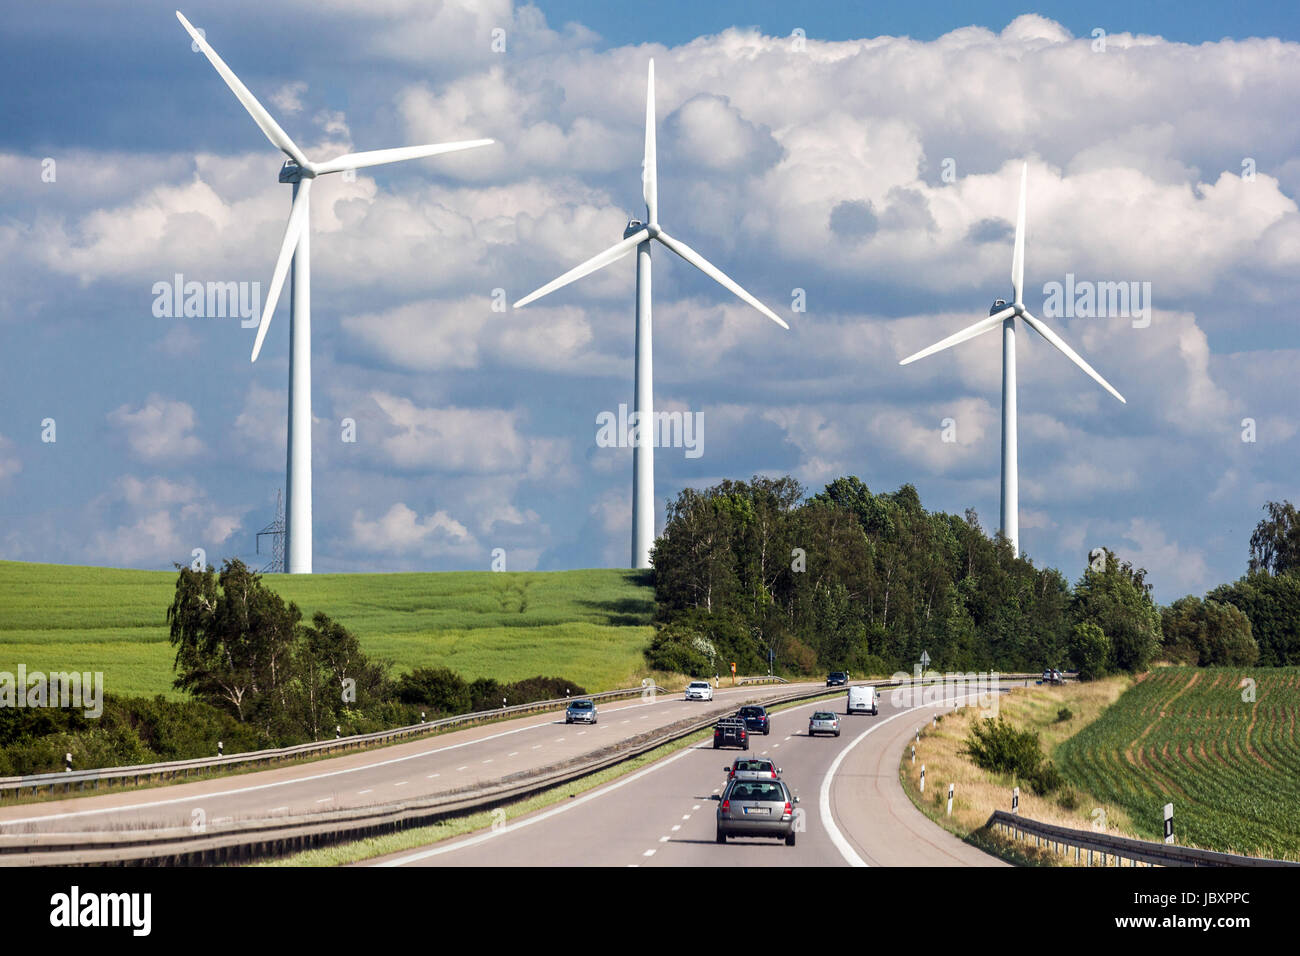 Voitures sur l'autoroute allemande et éoliennes de puissance Allemagne source d'énergie alternative Allemagne conduite sur l'autoroute Banque D'Images